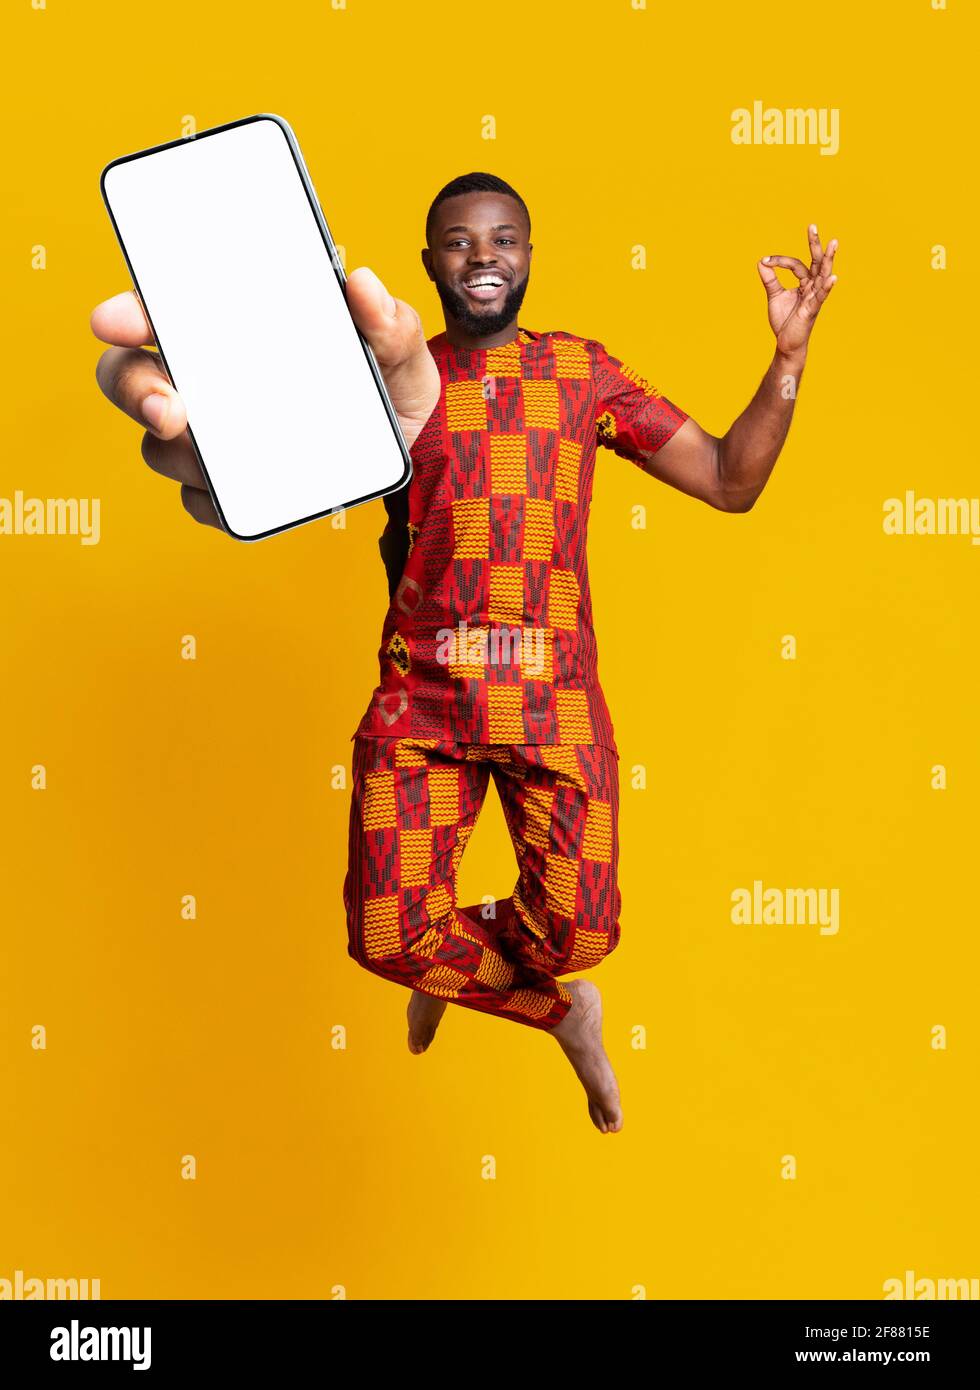 Tolle mobile Anwendung. Sorgloser afroamerikanischer Kerl in traditioneller Tracht, der mit dem Smartphone aufspringt, Mockup Stockfoto